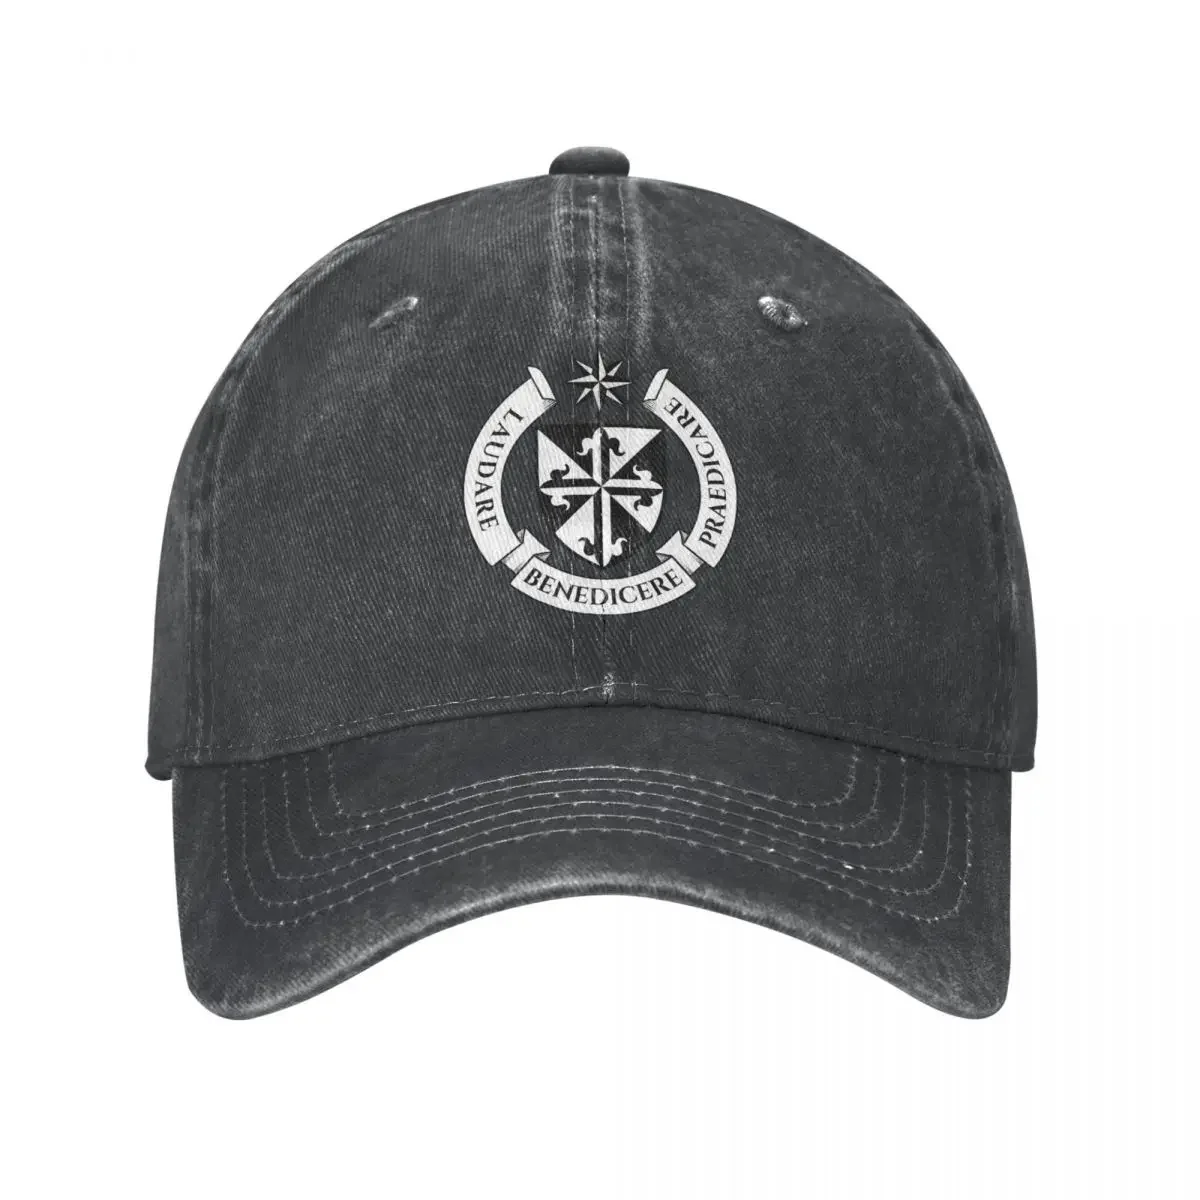 

Dominican Order Coat Of Arms Baseball Cap cowboy hat Peaked cap Cowboy Bebop Hats Men and women hats